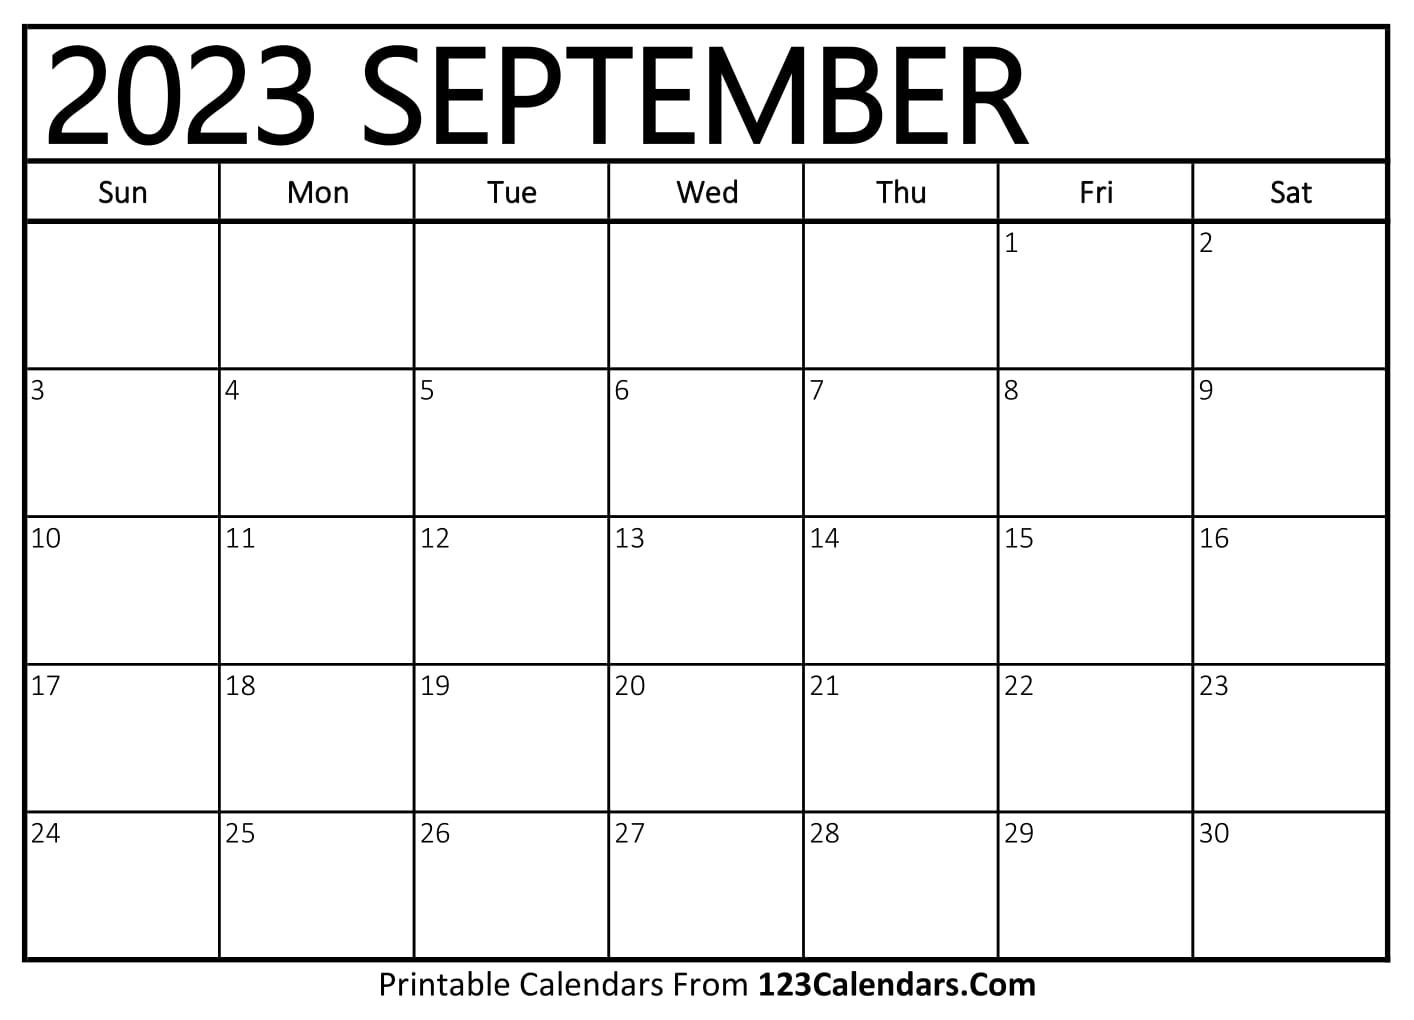 Printable September 2023 Calendar Templates 123Calendars com